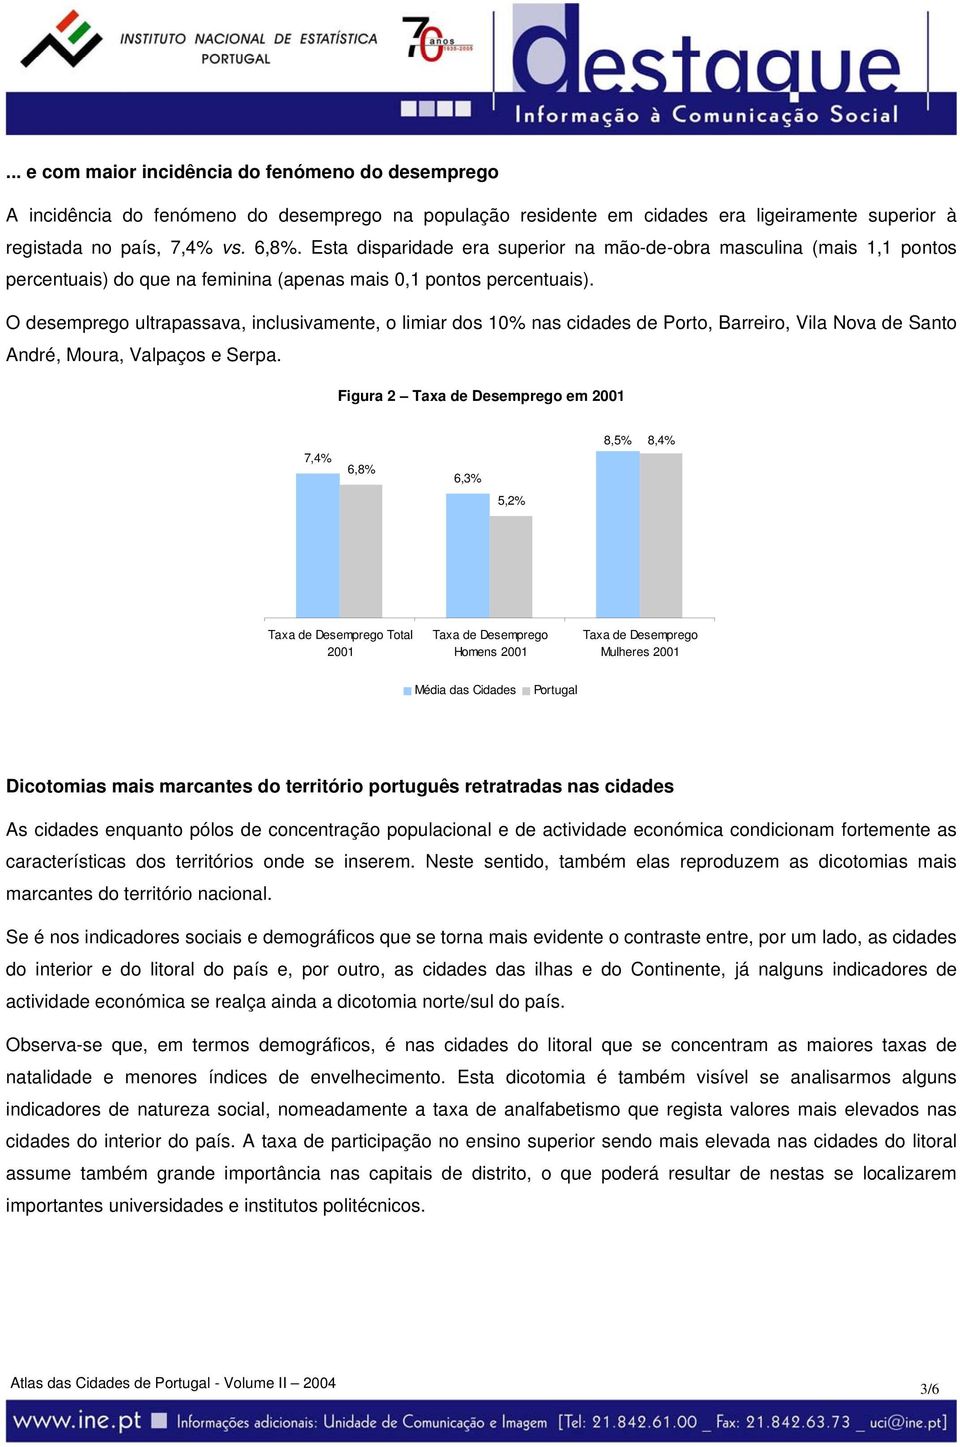 O desemprego ultrapassava, inclusivamente, o limiar dos 10% nas cidades de Porto, Barreiro, Vila Nova de Santo André, Moura, Valpaços e Serpa.